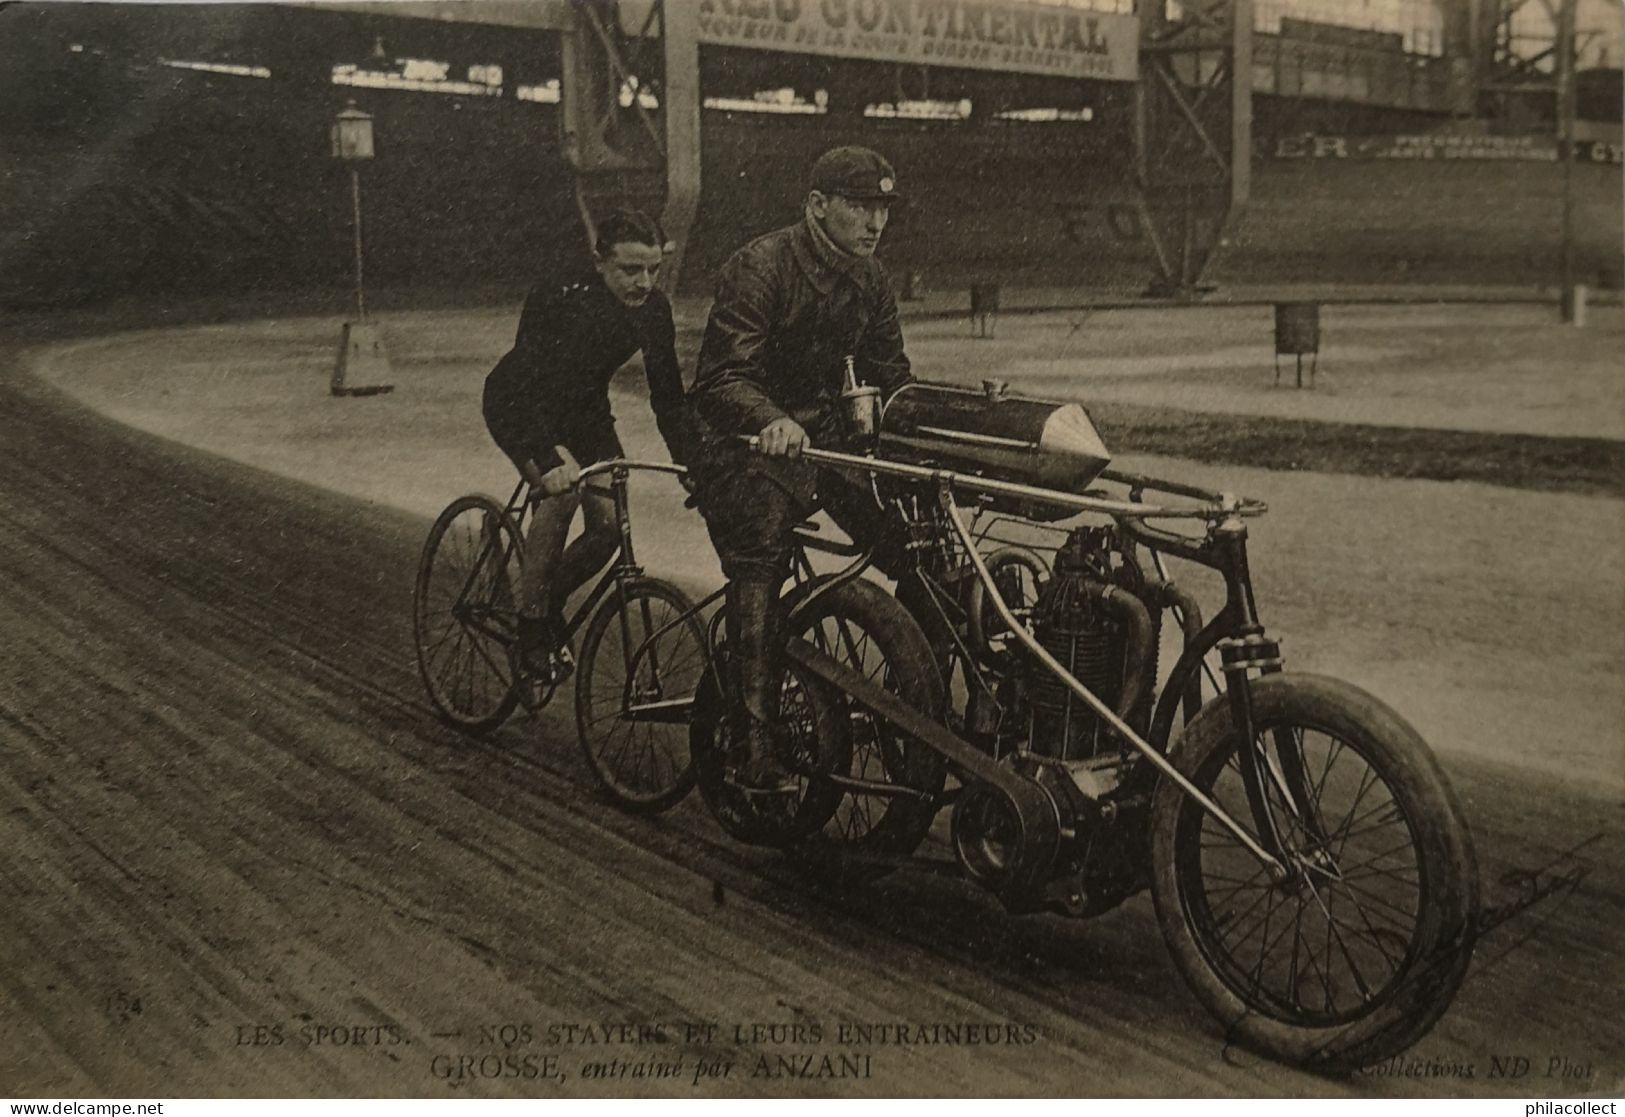 Cyclisme Les Sports Nos Stayers (Motorbike) Grosse Entratne Park Anzani 1905 - Cyclisme